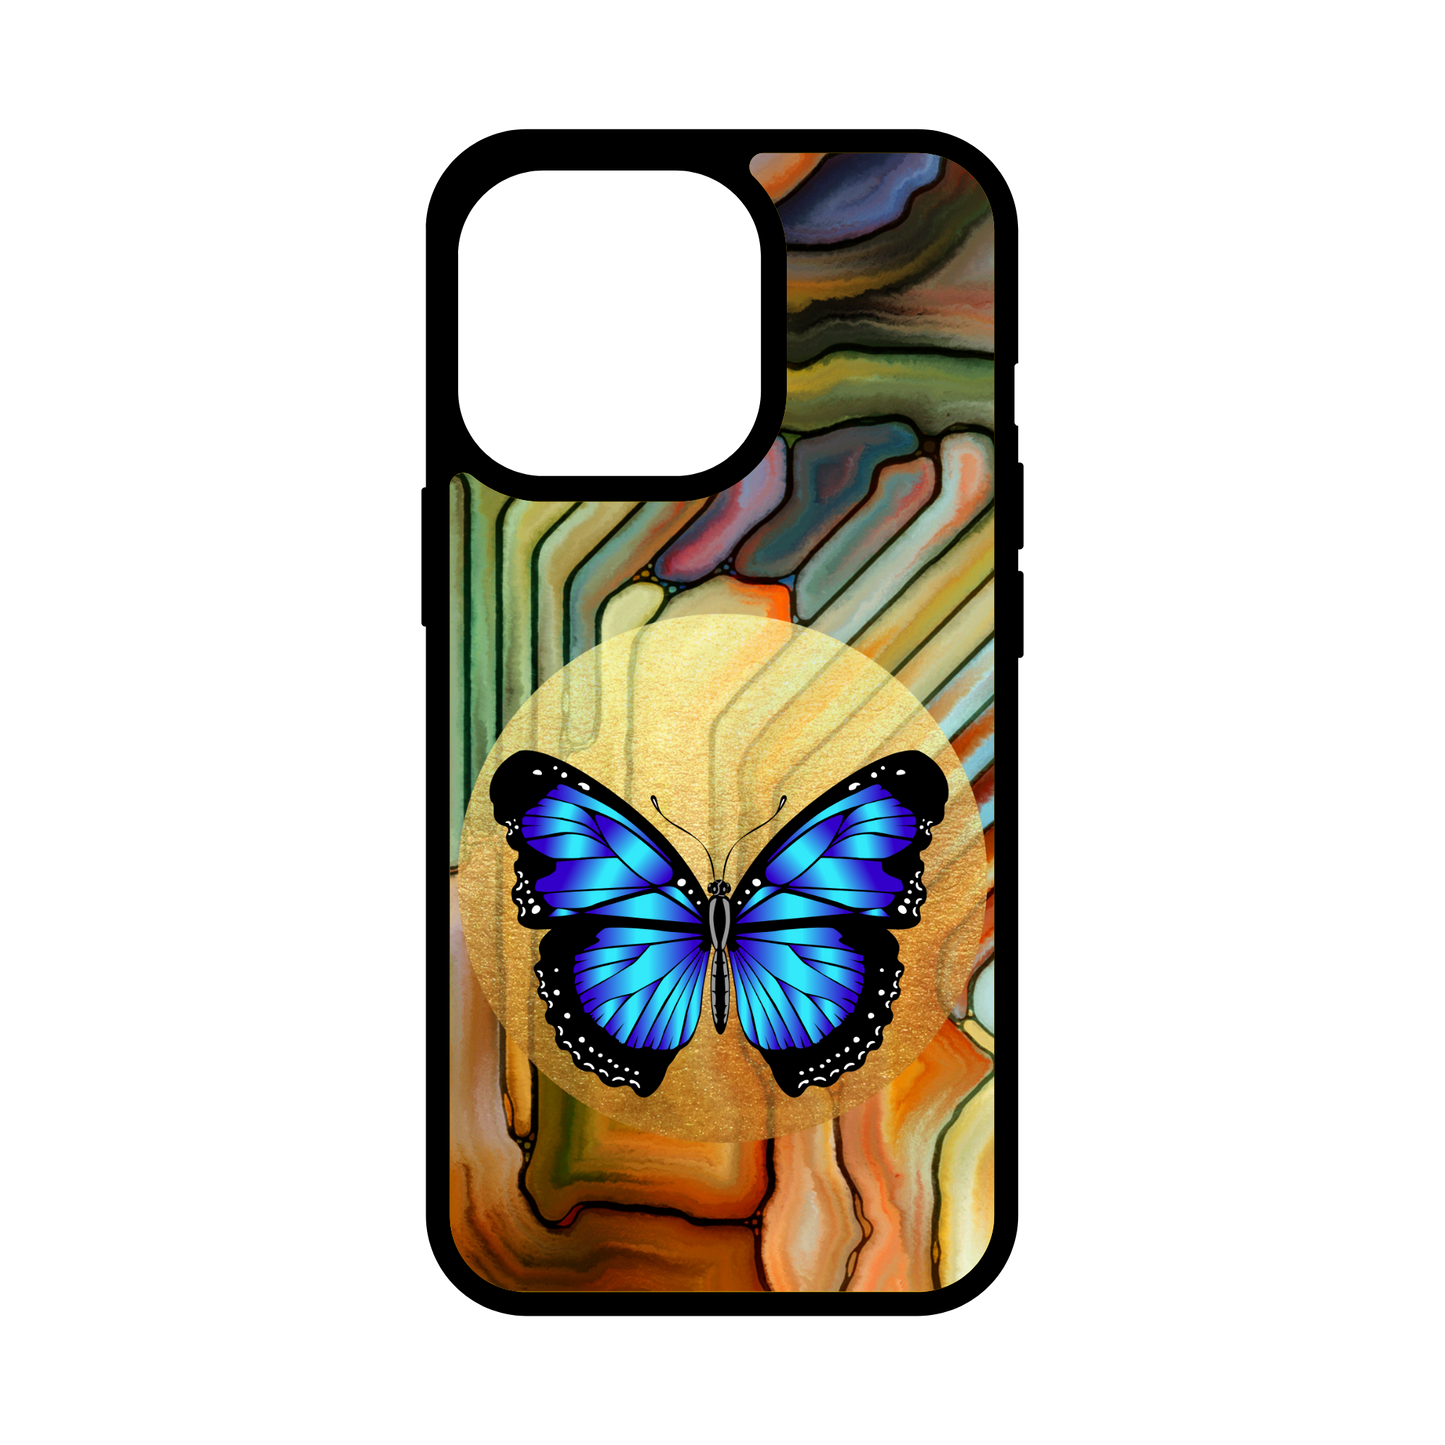 5.Butterfly